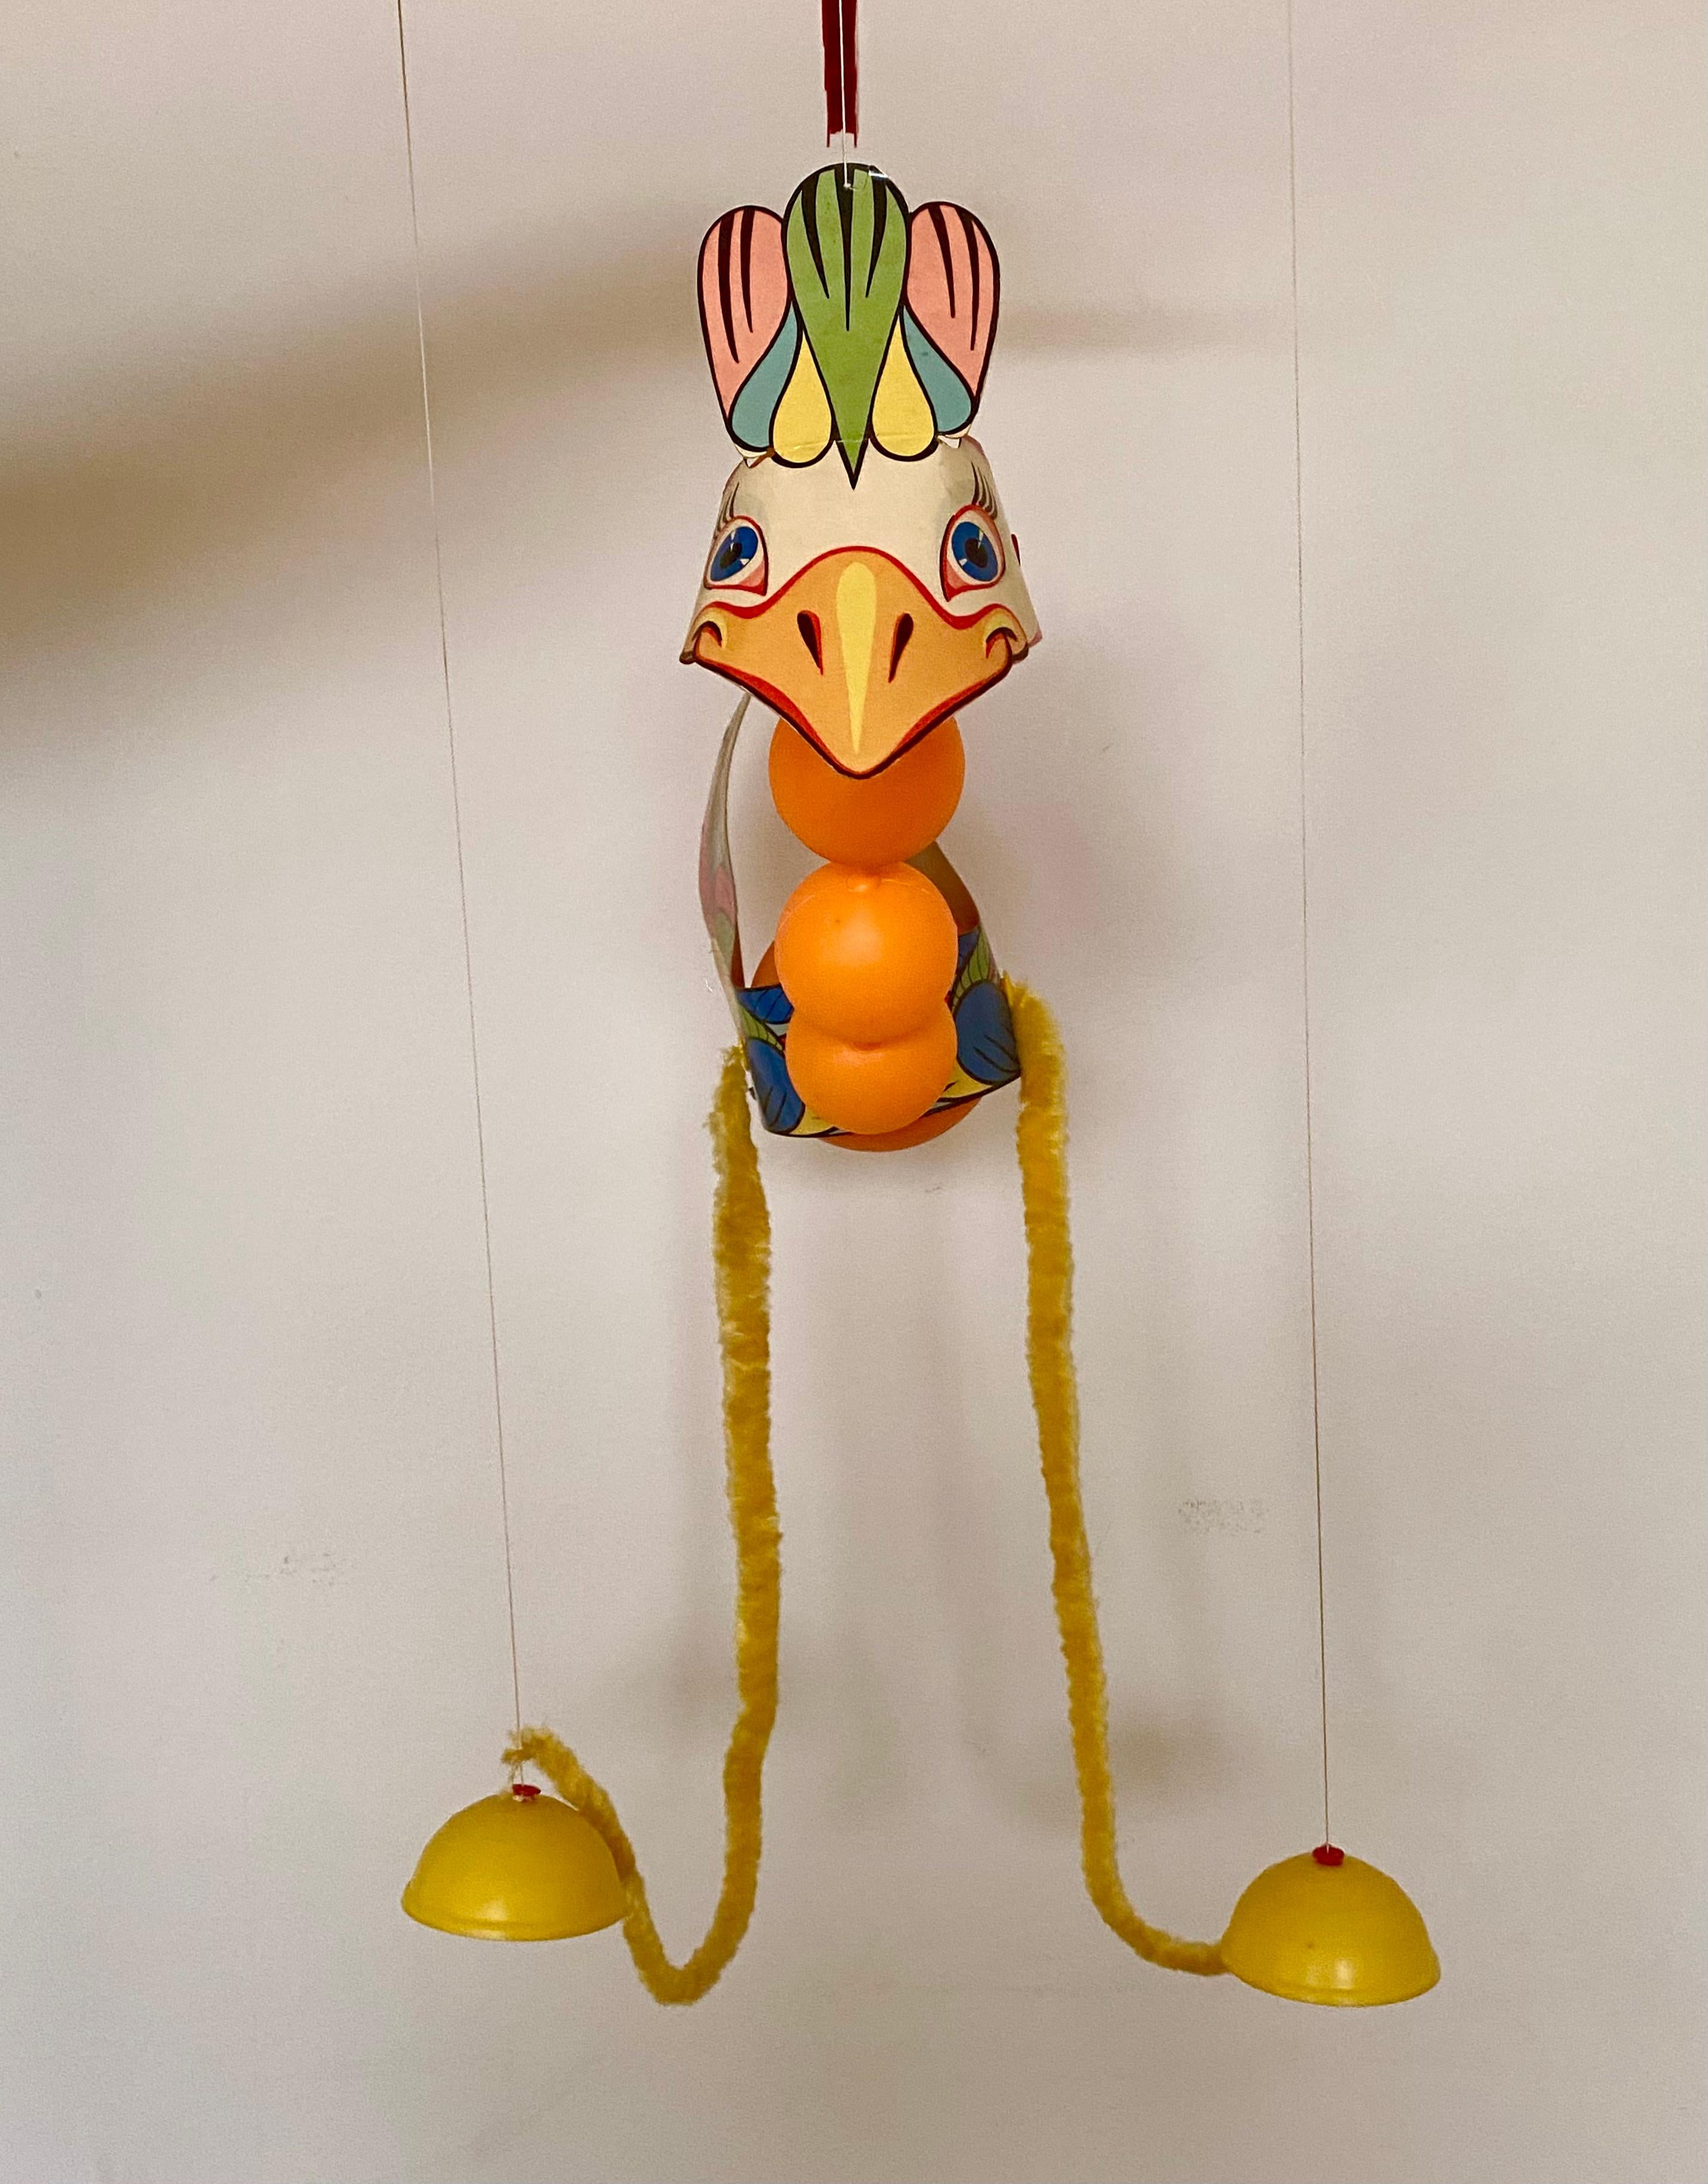 Seltene Loosi Goosi mulicolor Marionette wurde in Italien ca, die 1970er Jahre hergestellt.
Das Spielzeug wurde hauptsächlich aus Plastik und Karton hergestellt. Es ist in sehr gutem Zustand in Anbetracht seines Alters und es kommt sogar mit der